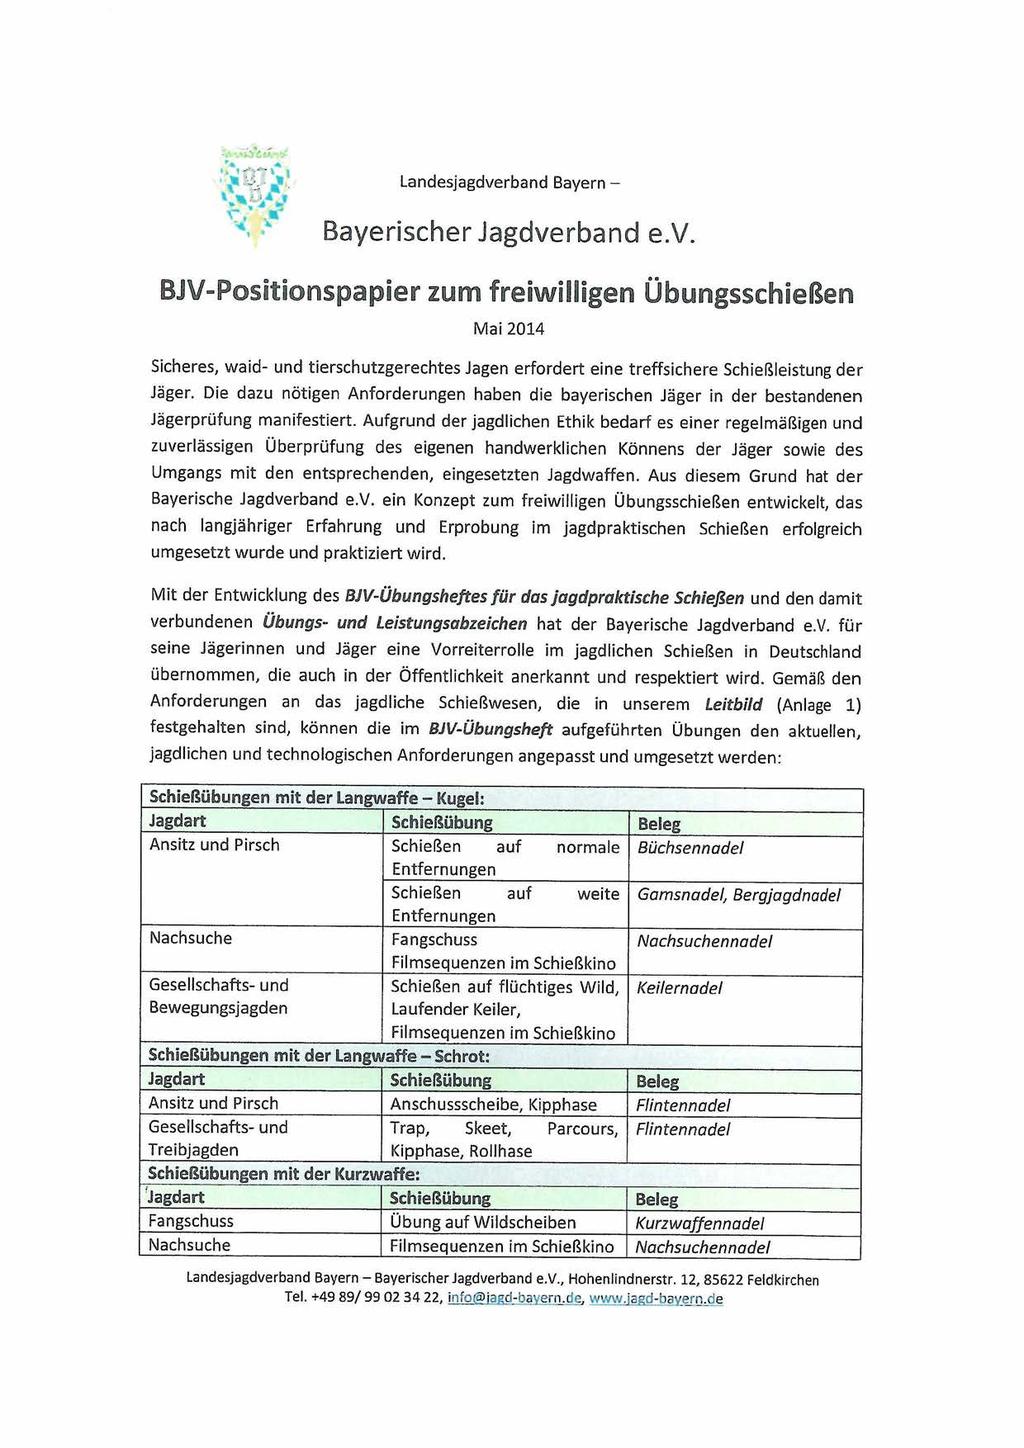 Landesjagdverband Bayern - Bayerischer Jagdverband e.v. BJV-Positionspapier zum freiwilligen Mai 2014 Übungsschießen Sicheres, waid- und tierschutzgerechtes Jagen erfordert eine treffsichere Schießleistung der Jäger.